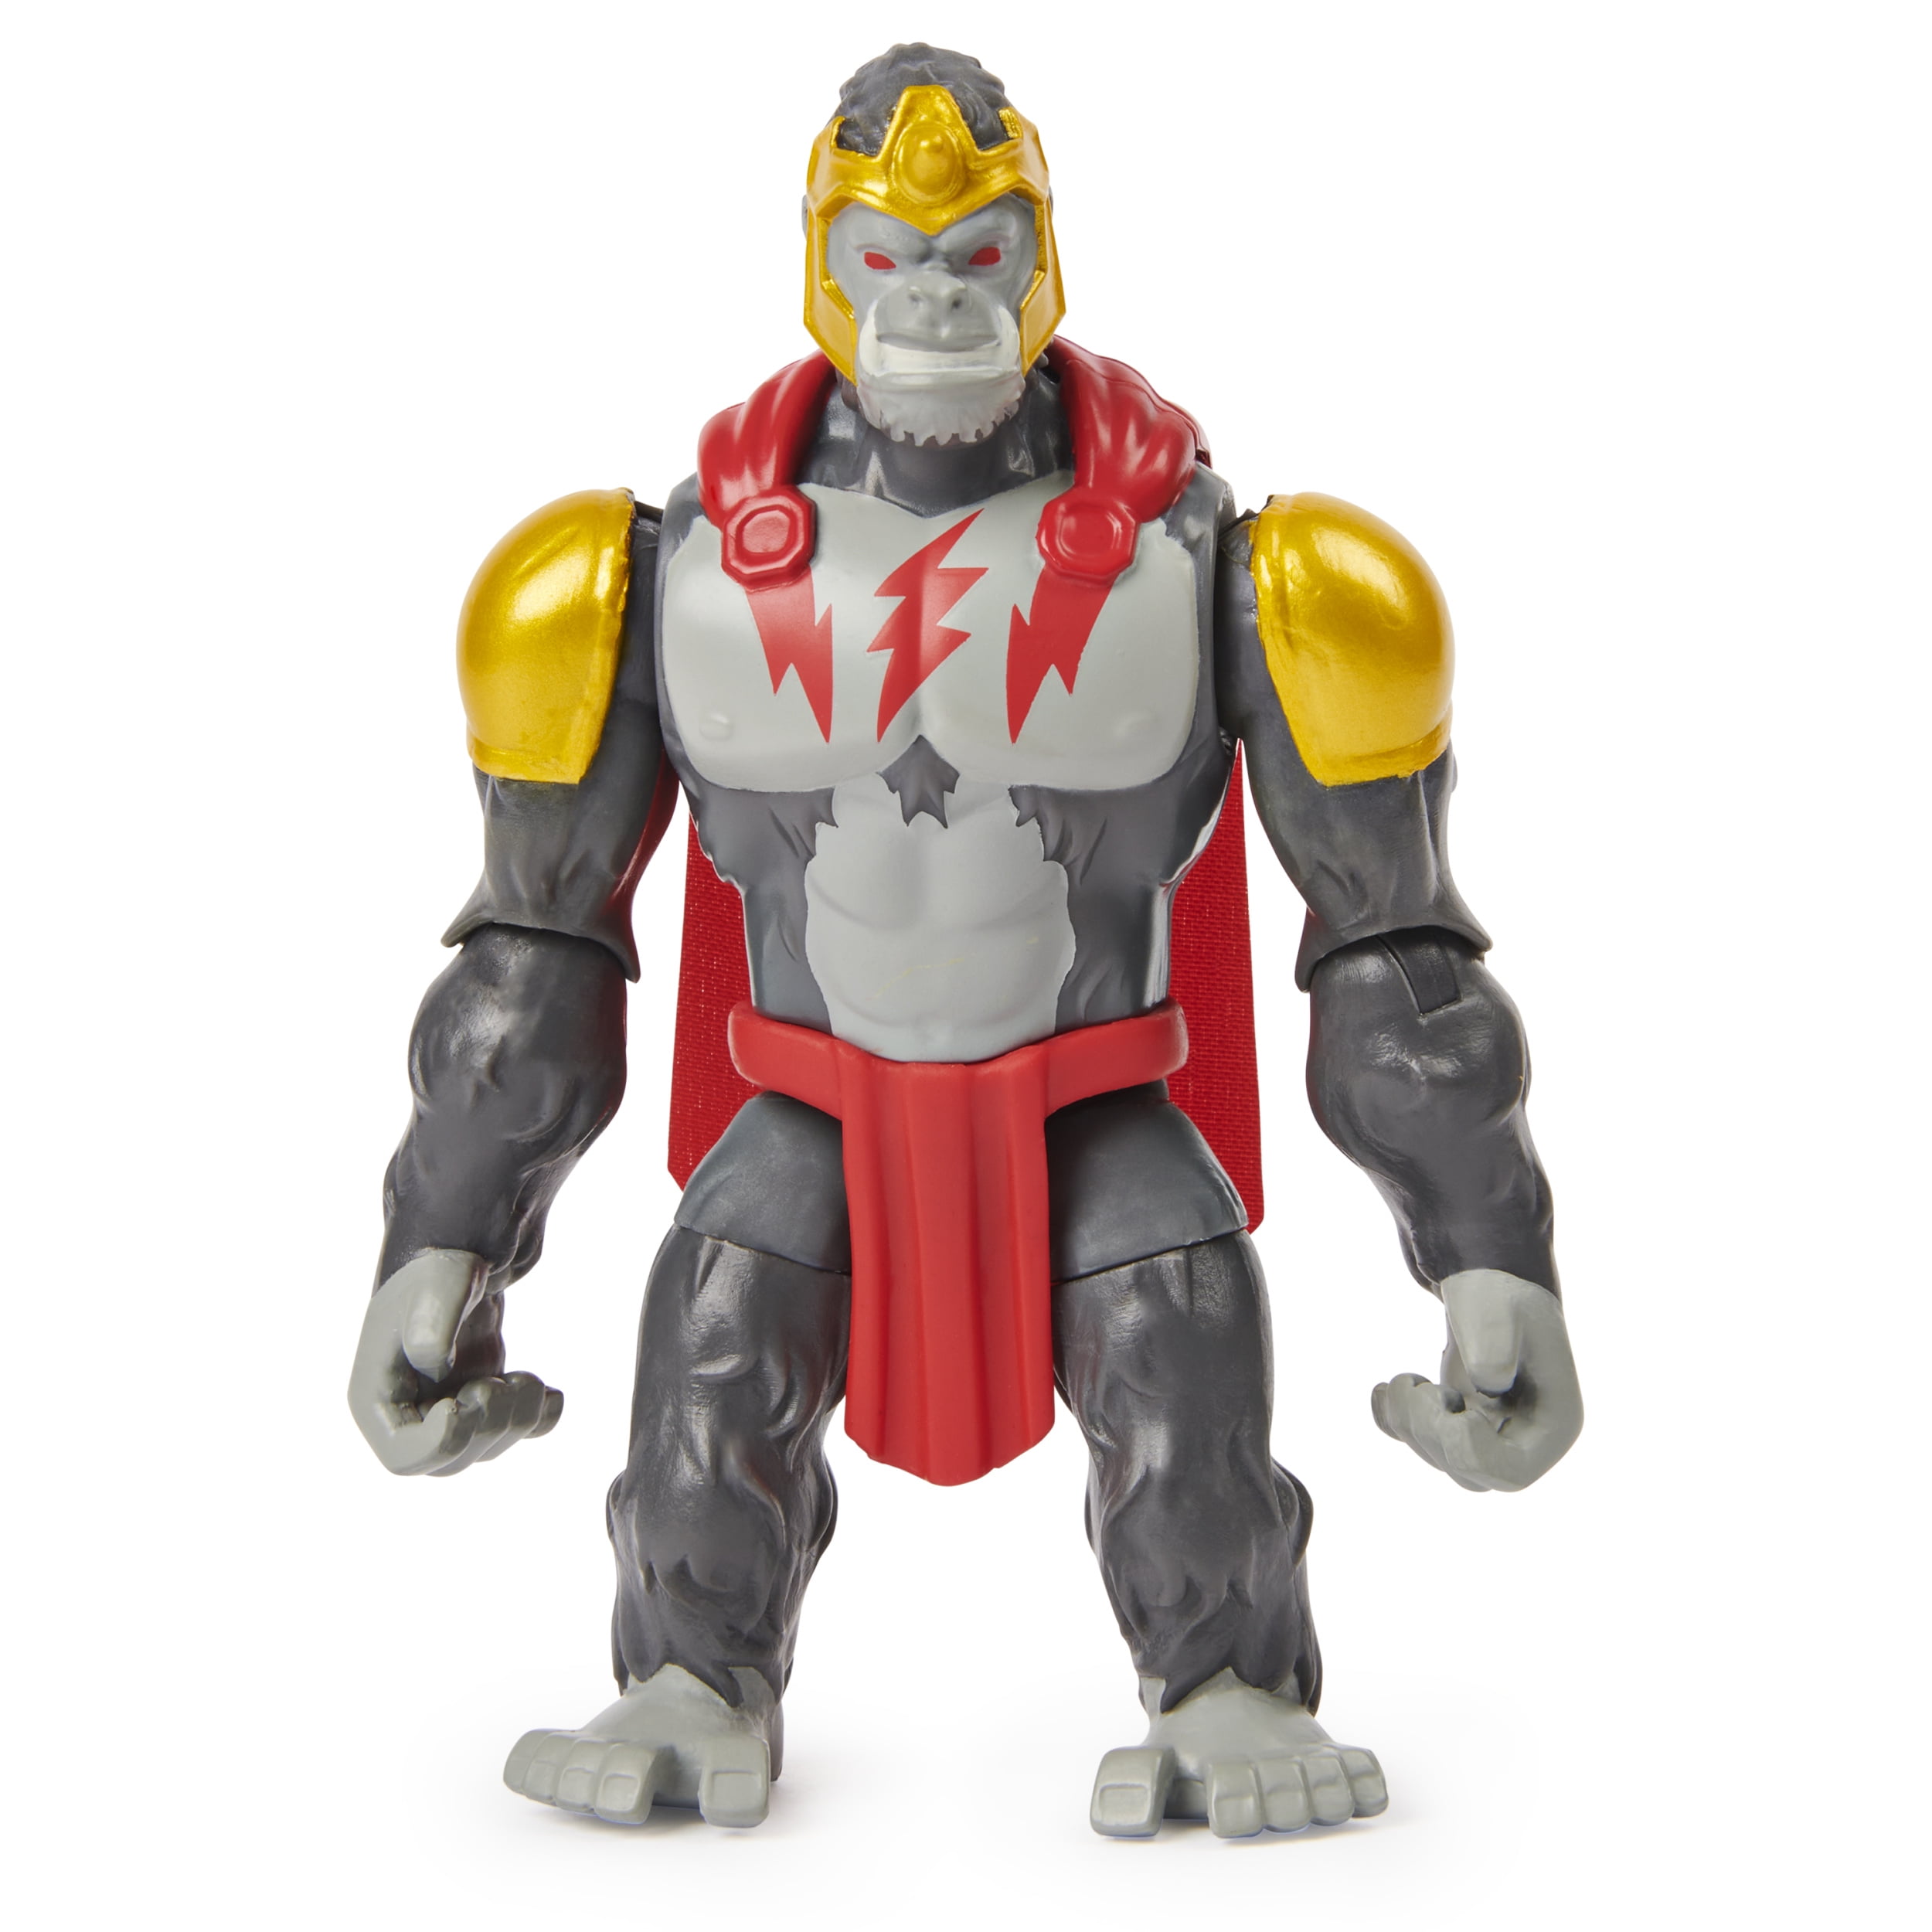 Gorilla Grodd DC Super Villains 1st Edition Action Figure 2020 Spin Master for sale online 